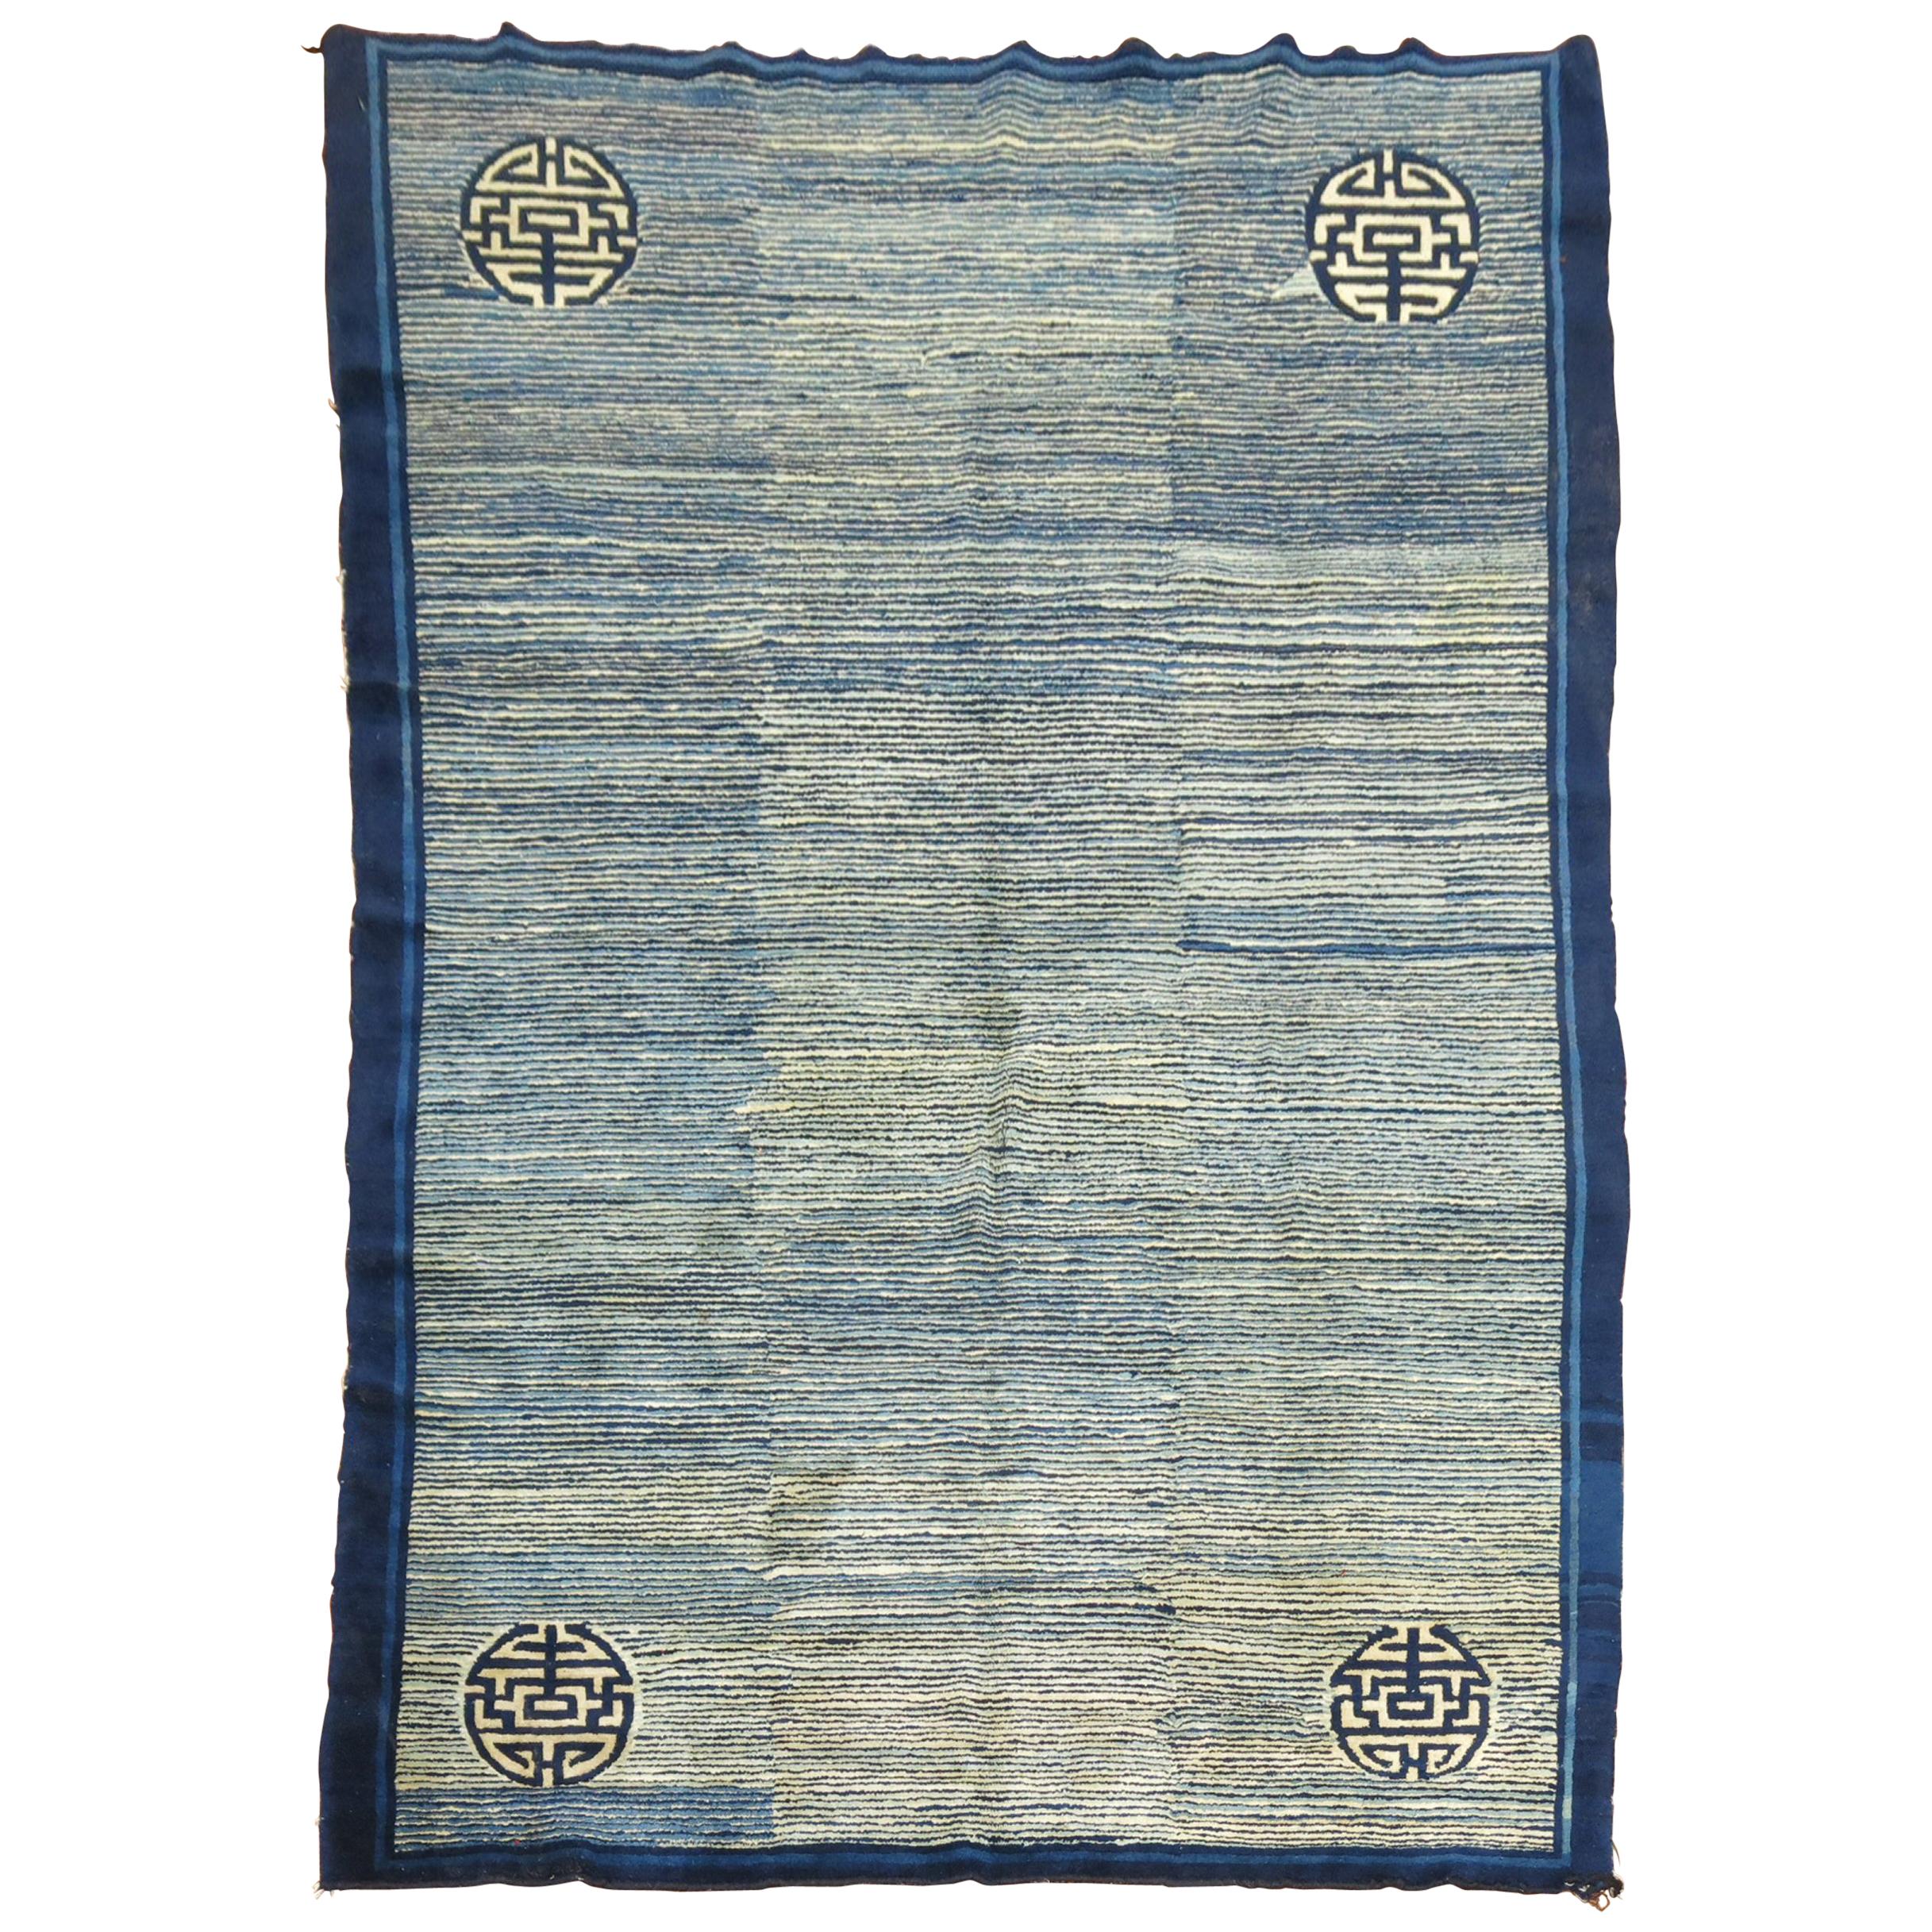 Chinesischer Teppich aus dem 19. Jahrhundert